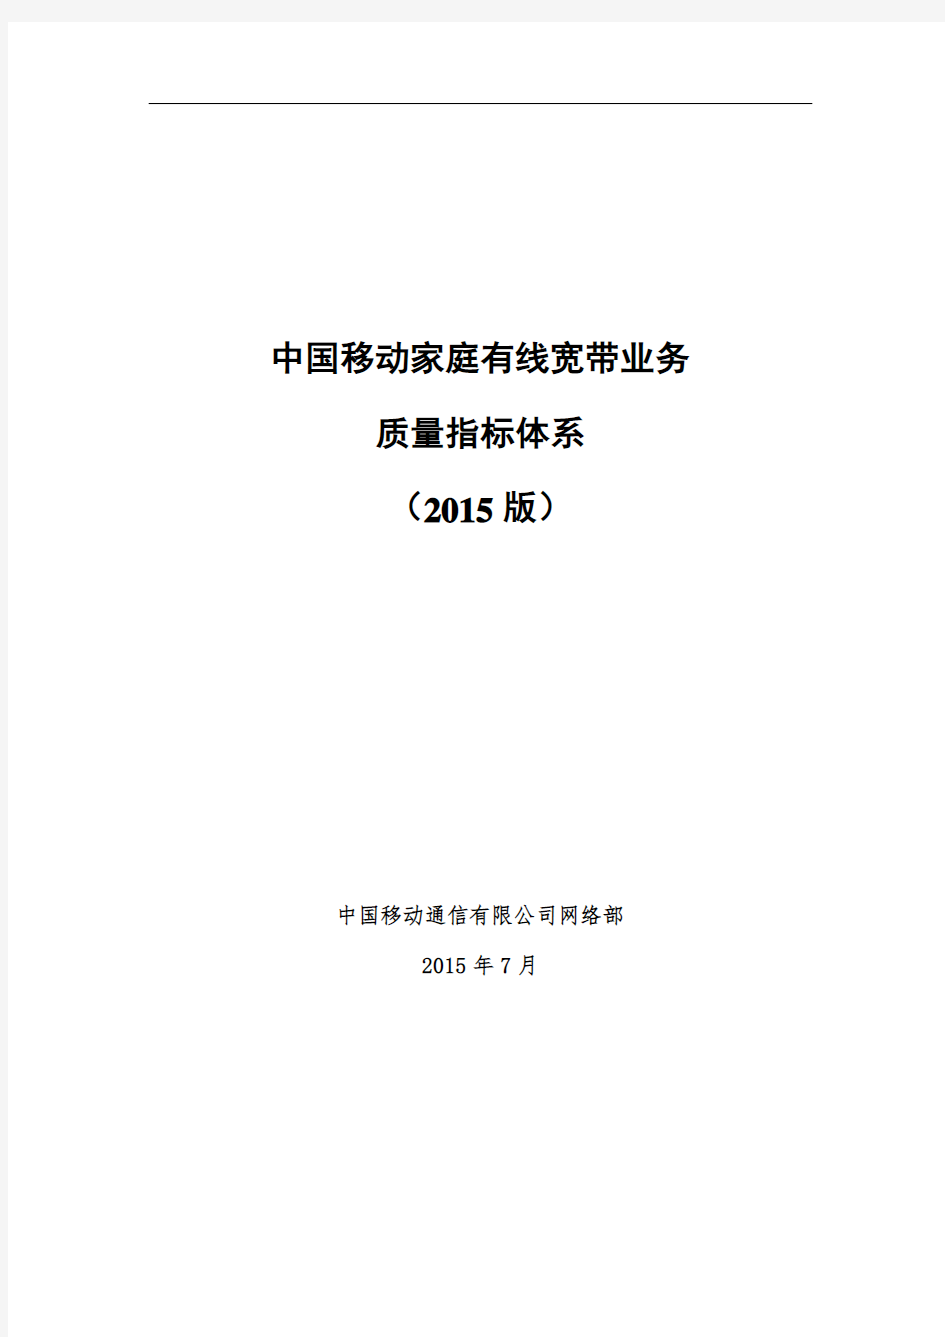 中国移动家庭有线宽带业务质量指标体系(2015版)